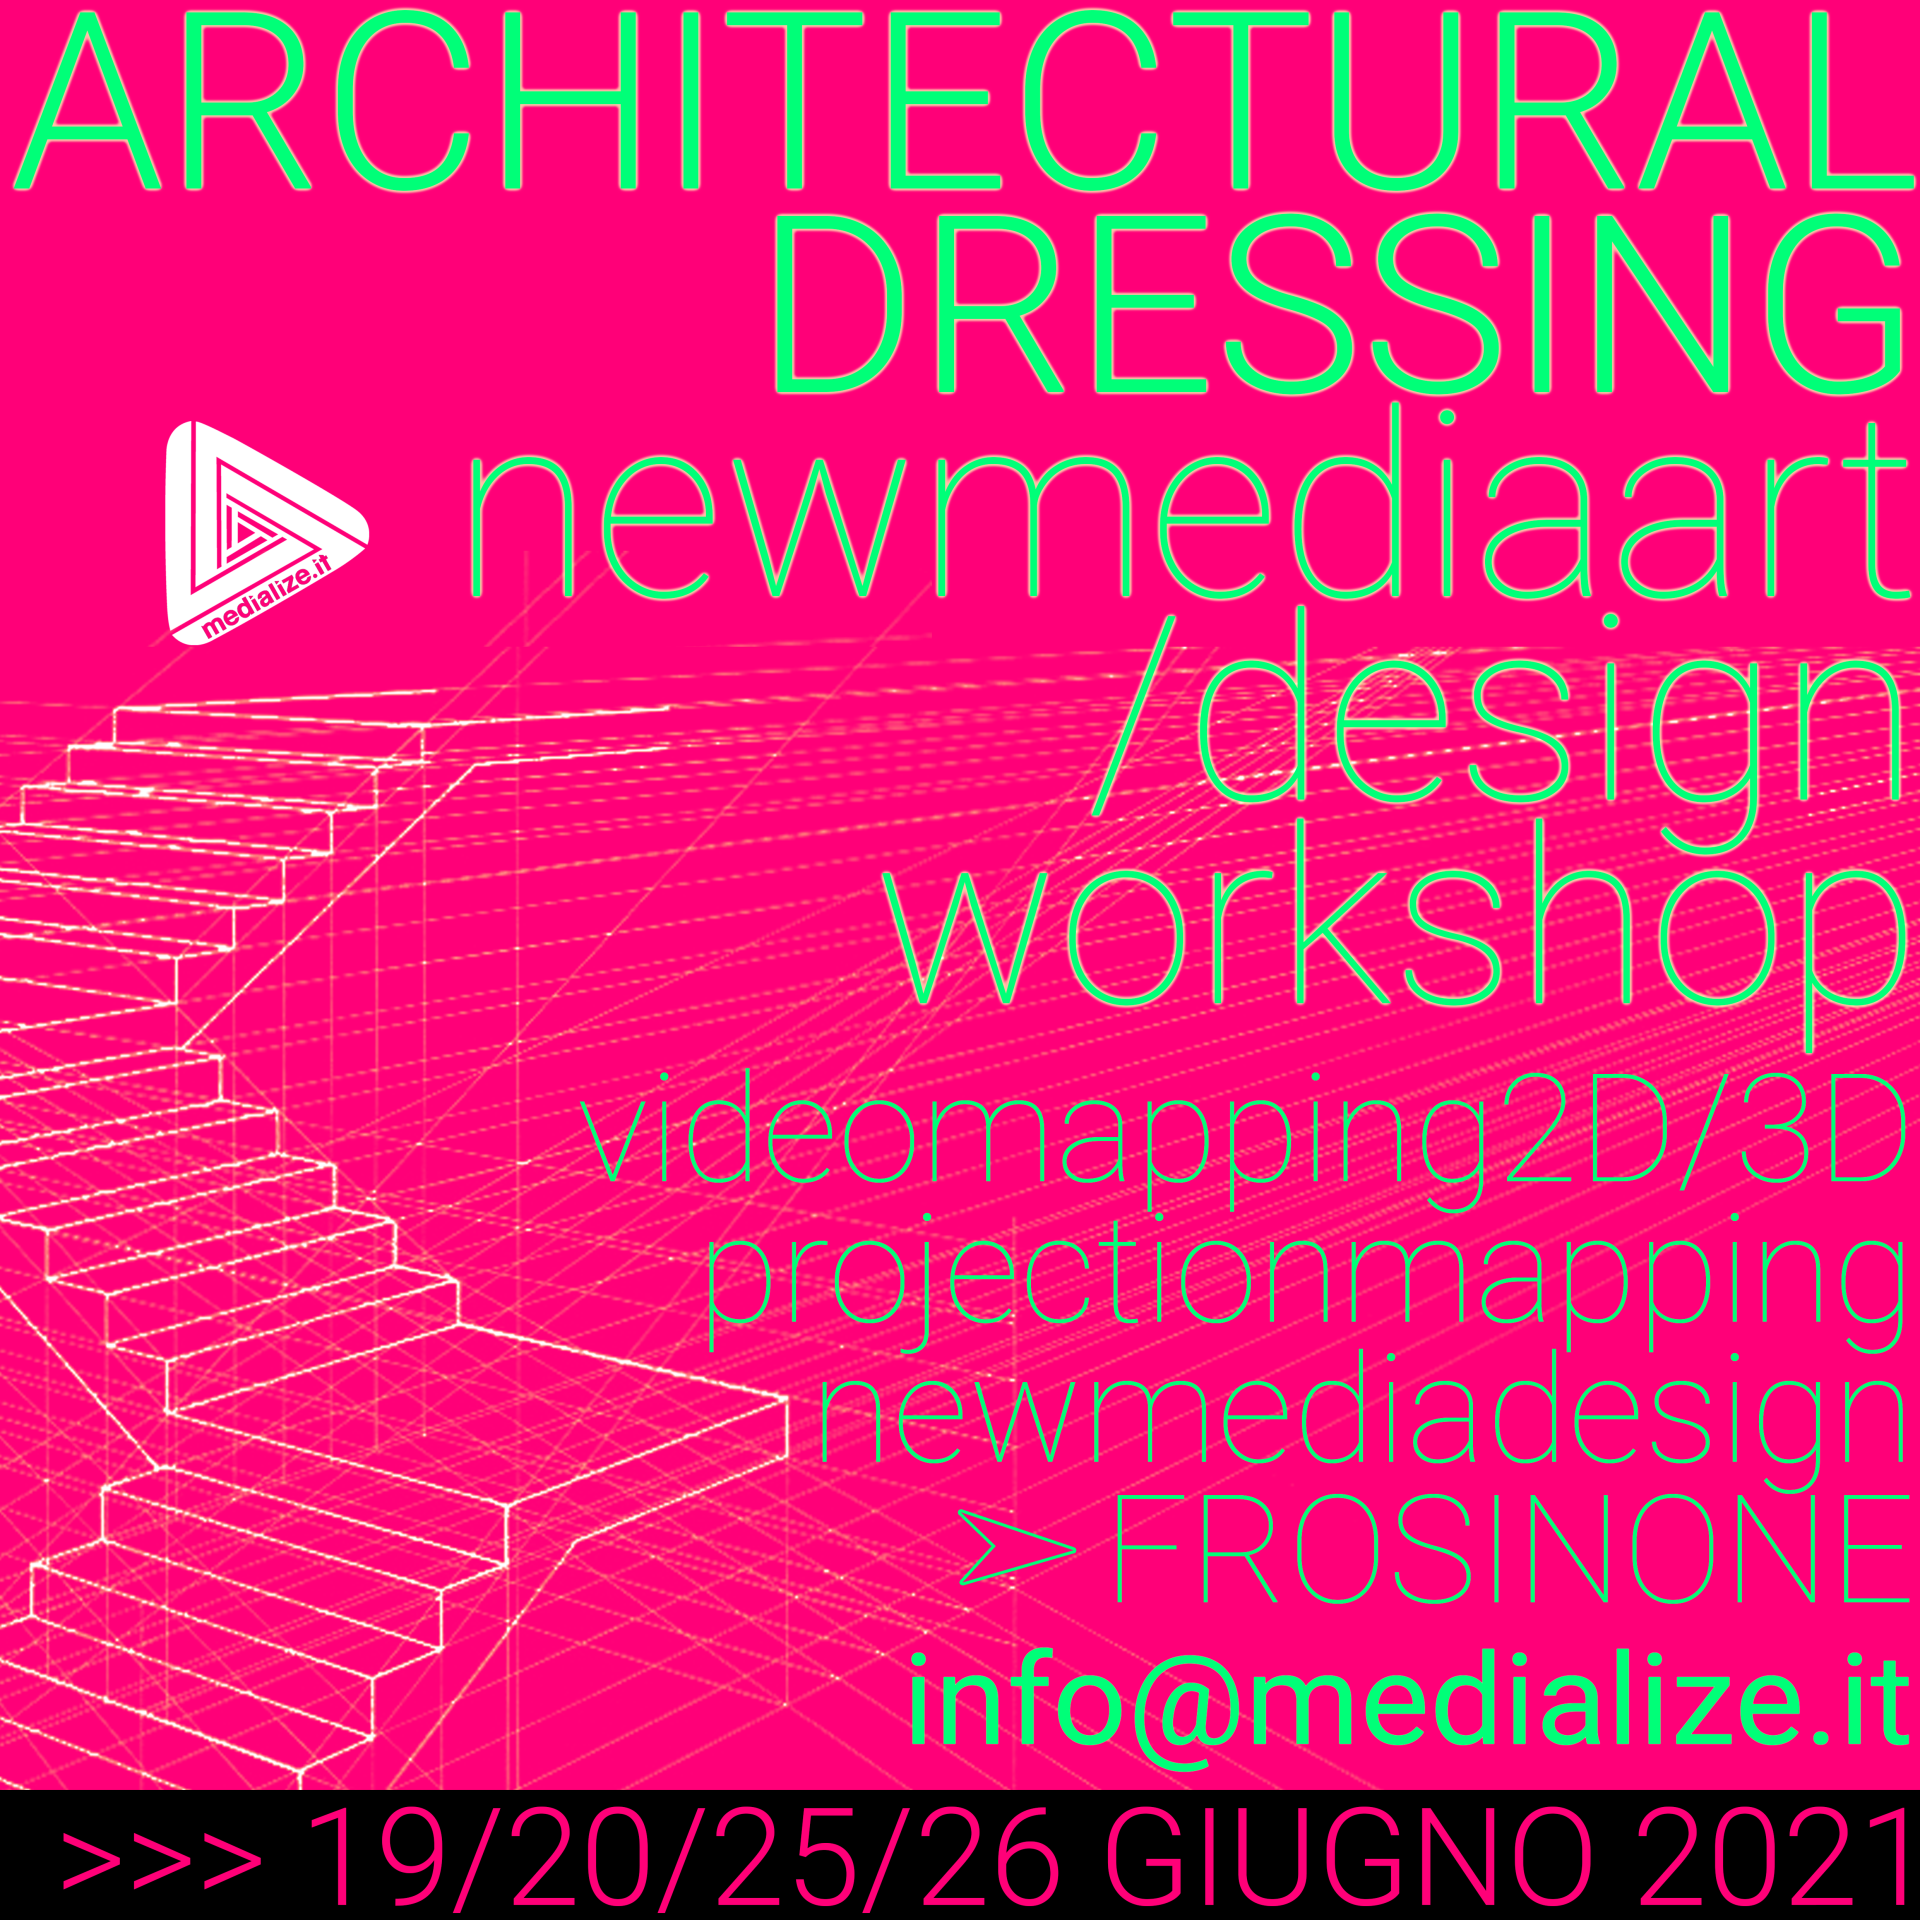 flyer-architectural-dressing-fr-2021